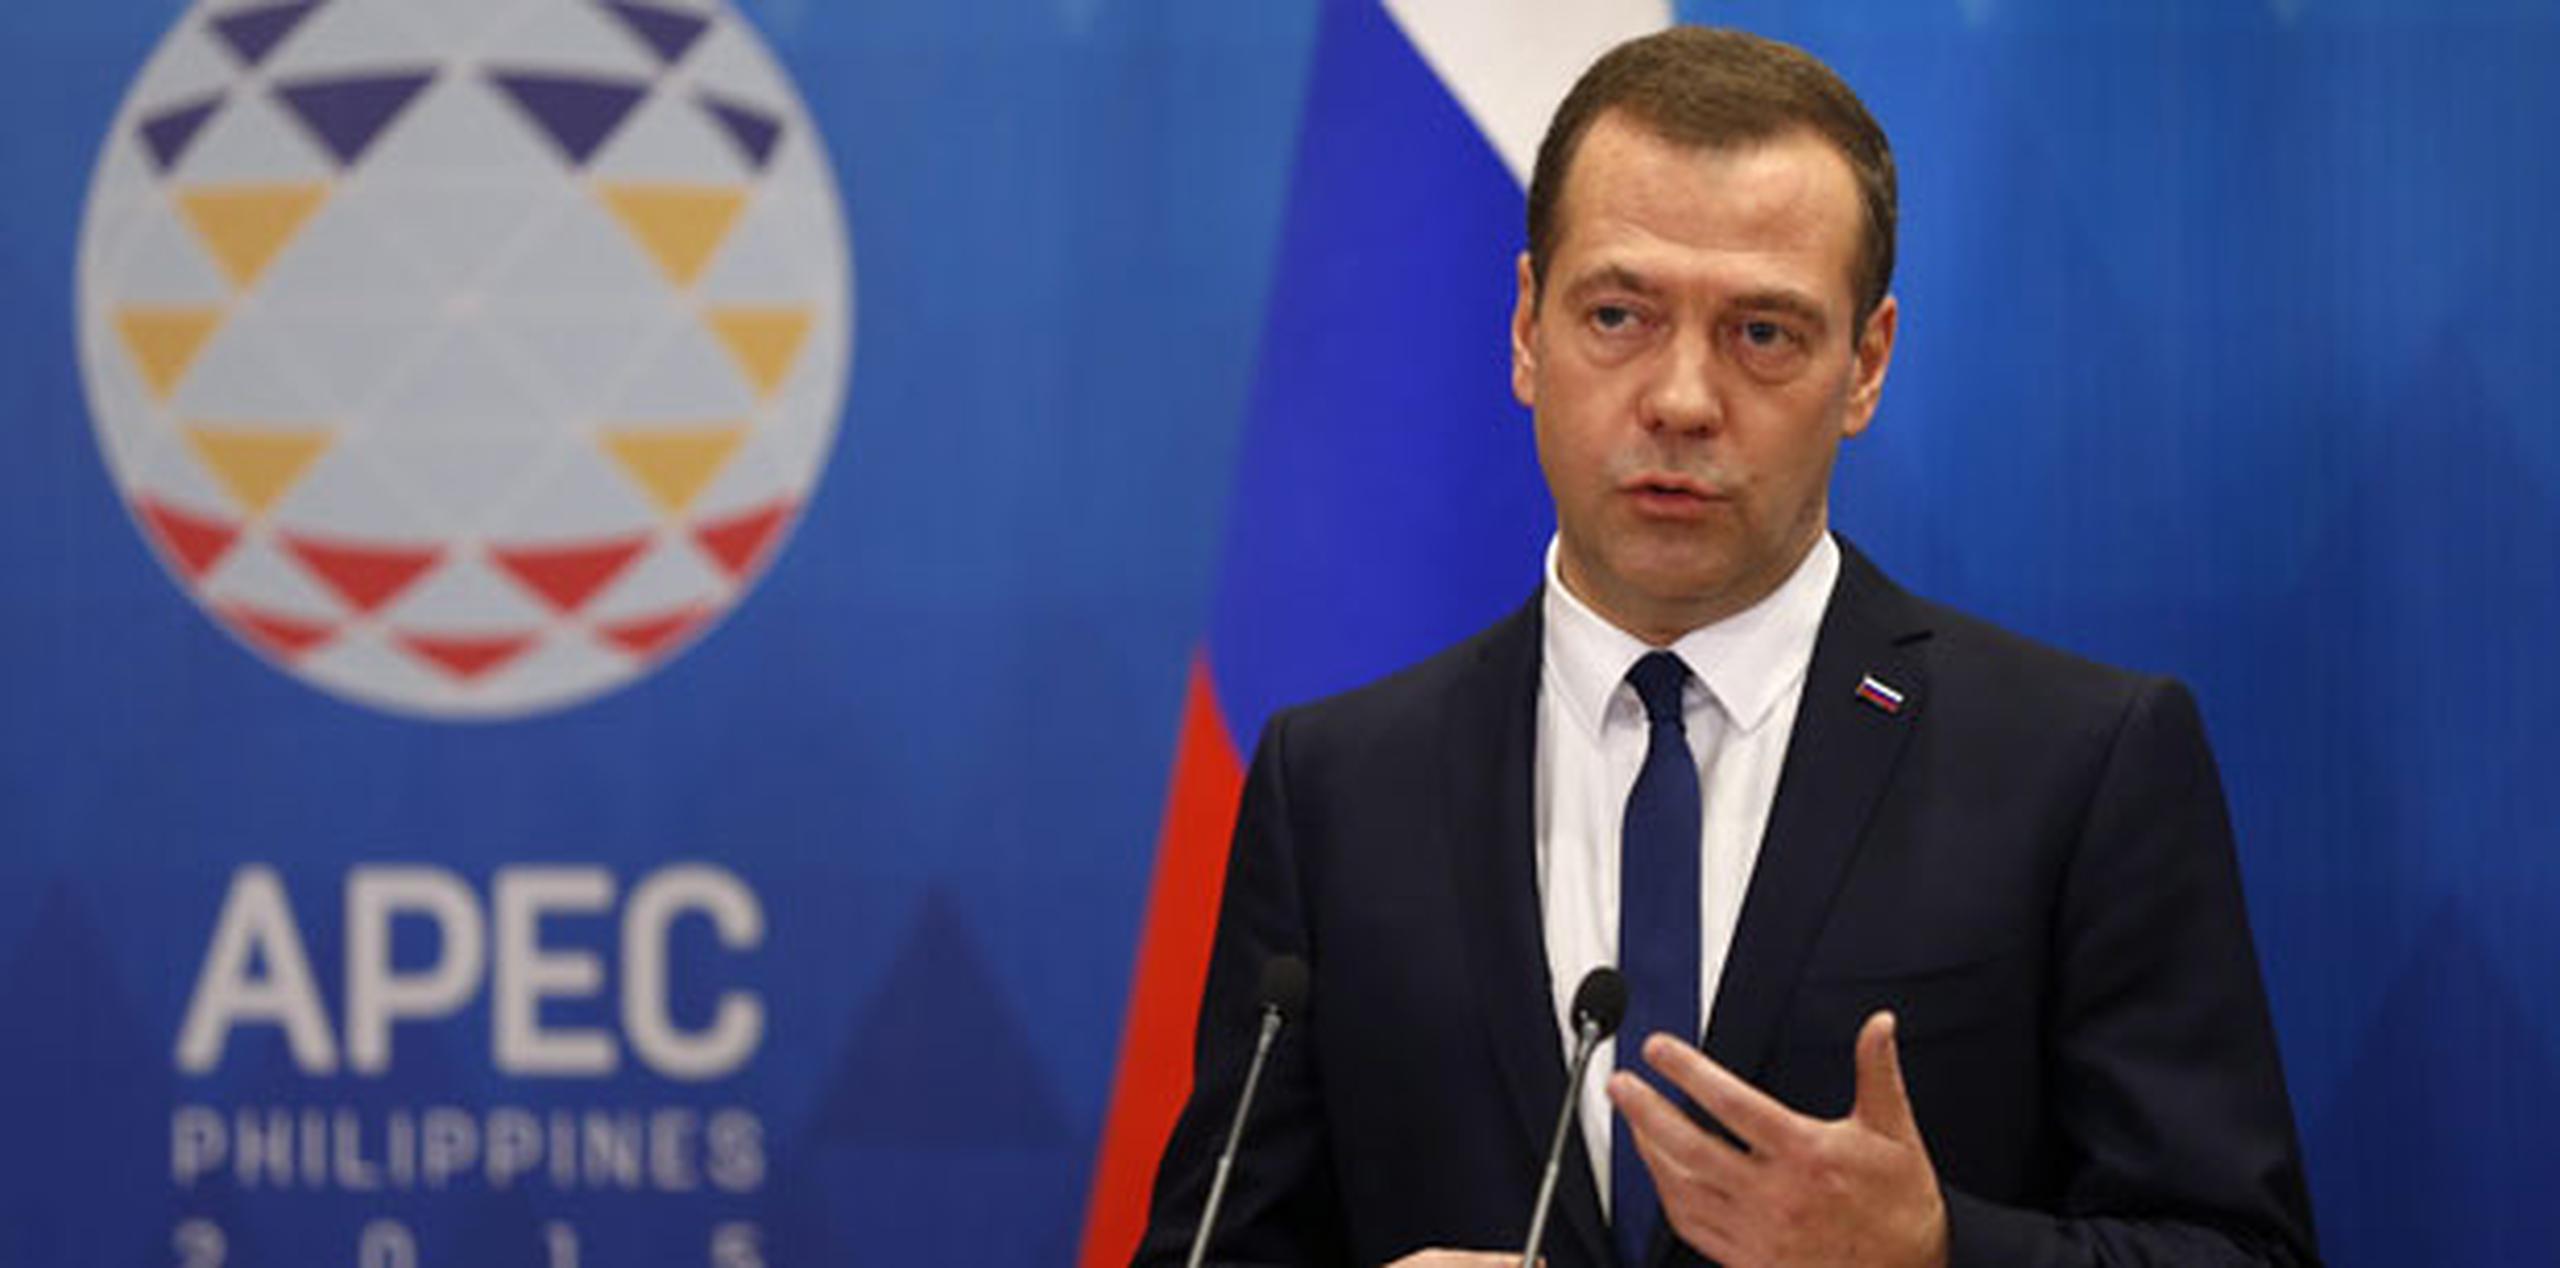 El primer ministro ruso, Dmitry Medvedev, señaló que la posición de Moscú "es bien conocida". (EFE/Yuri Kochetkov)